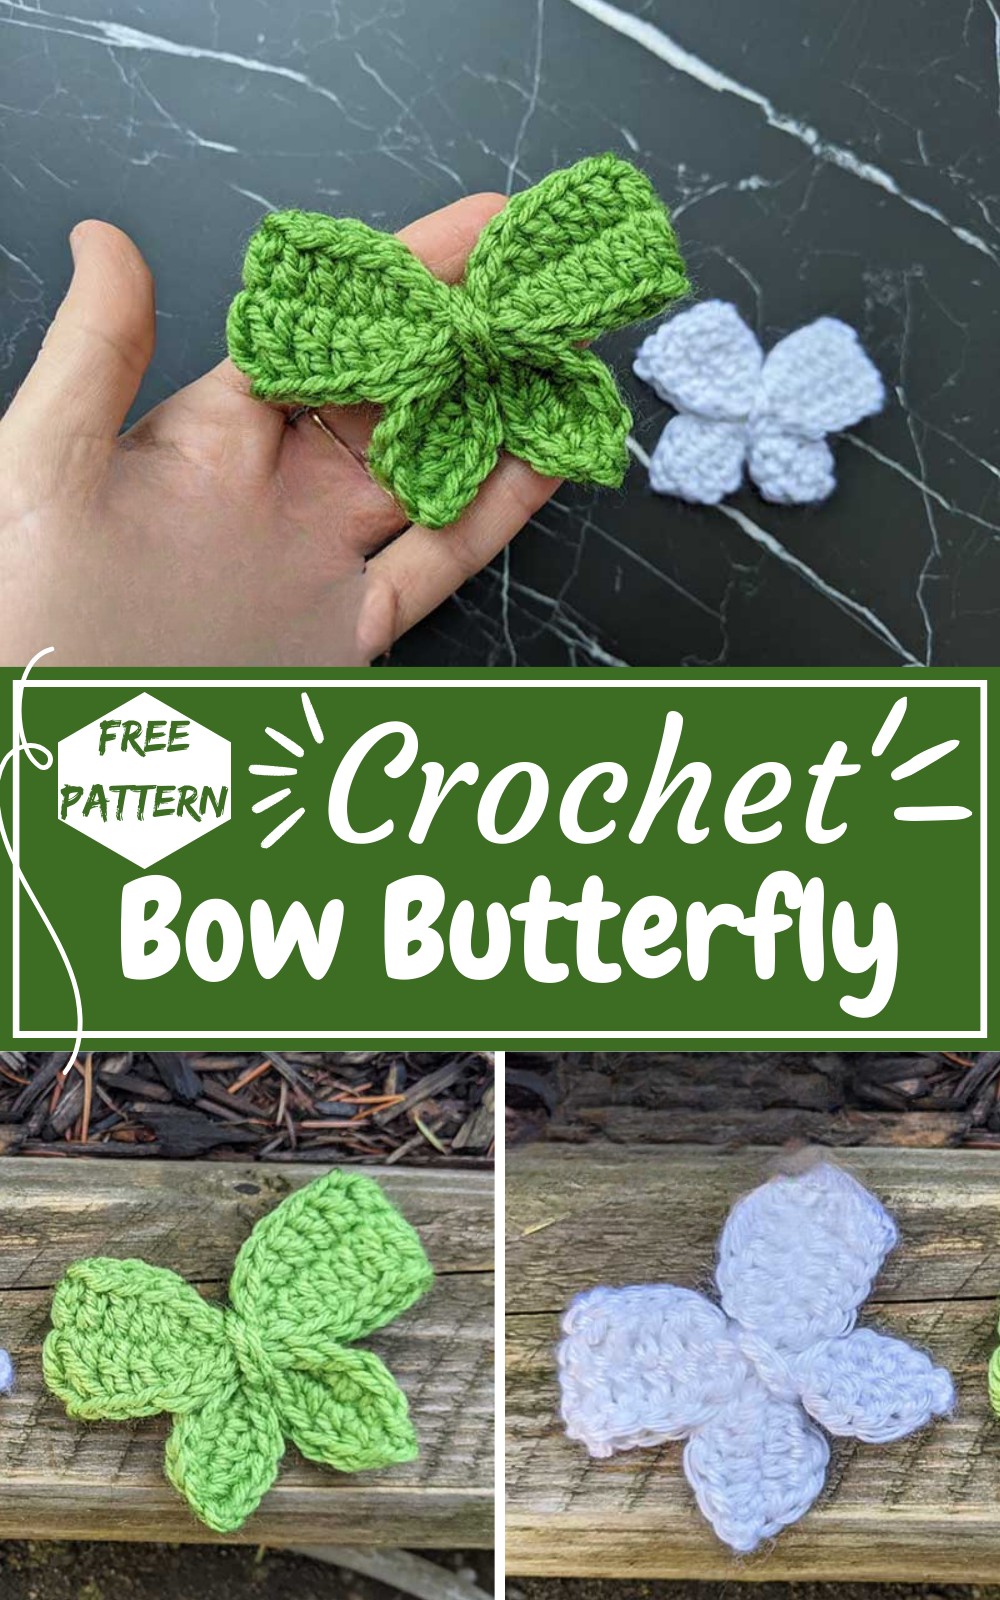 Crochet Bow Butterfly Free Pattern